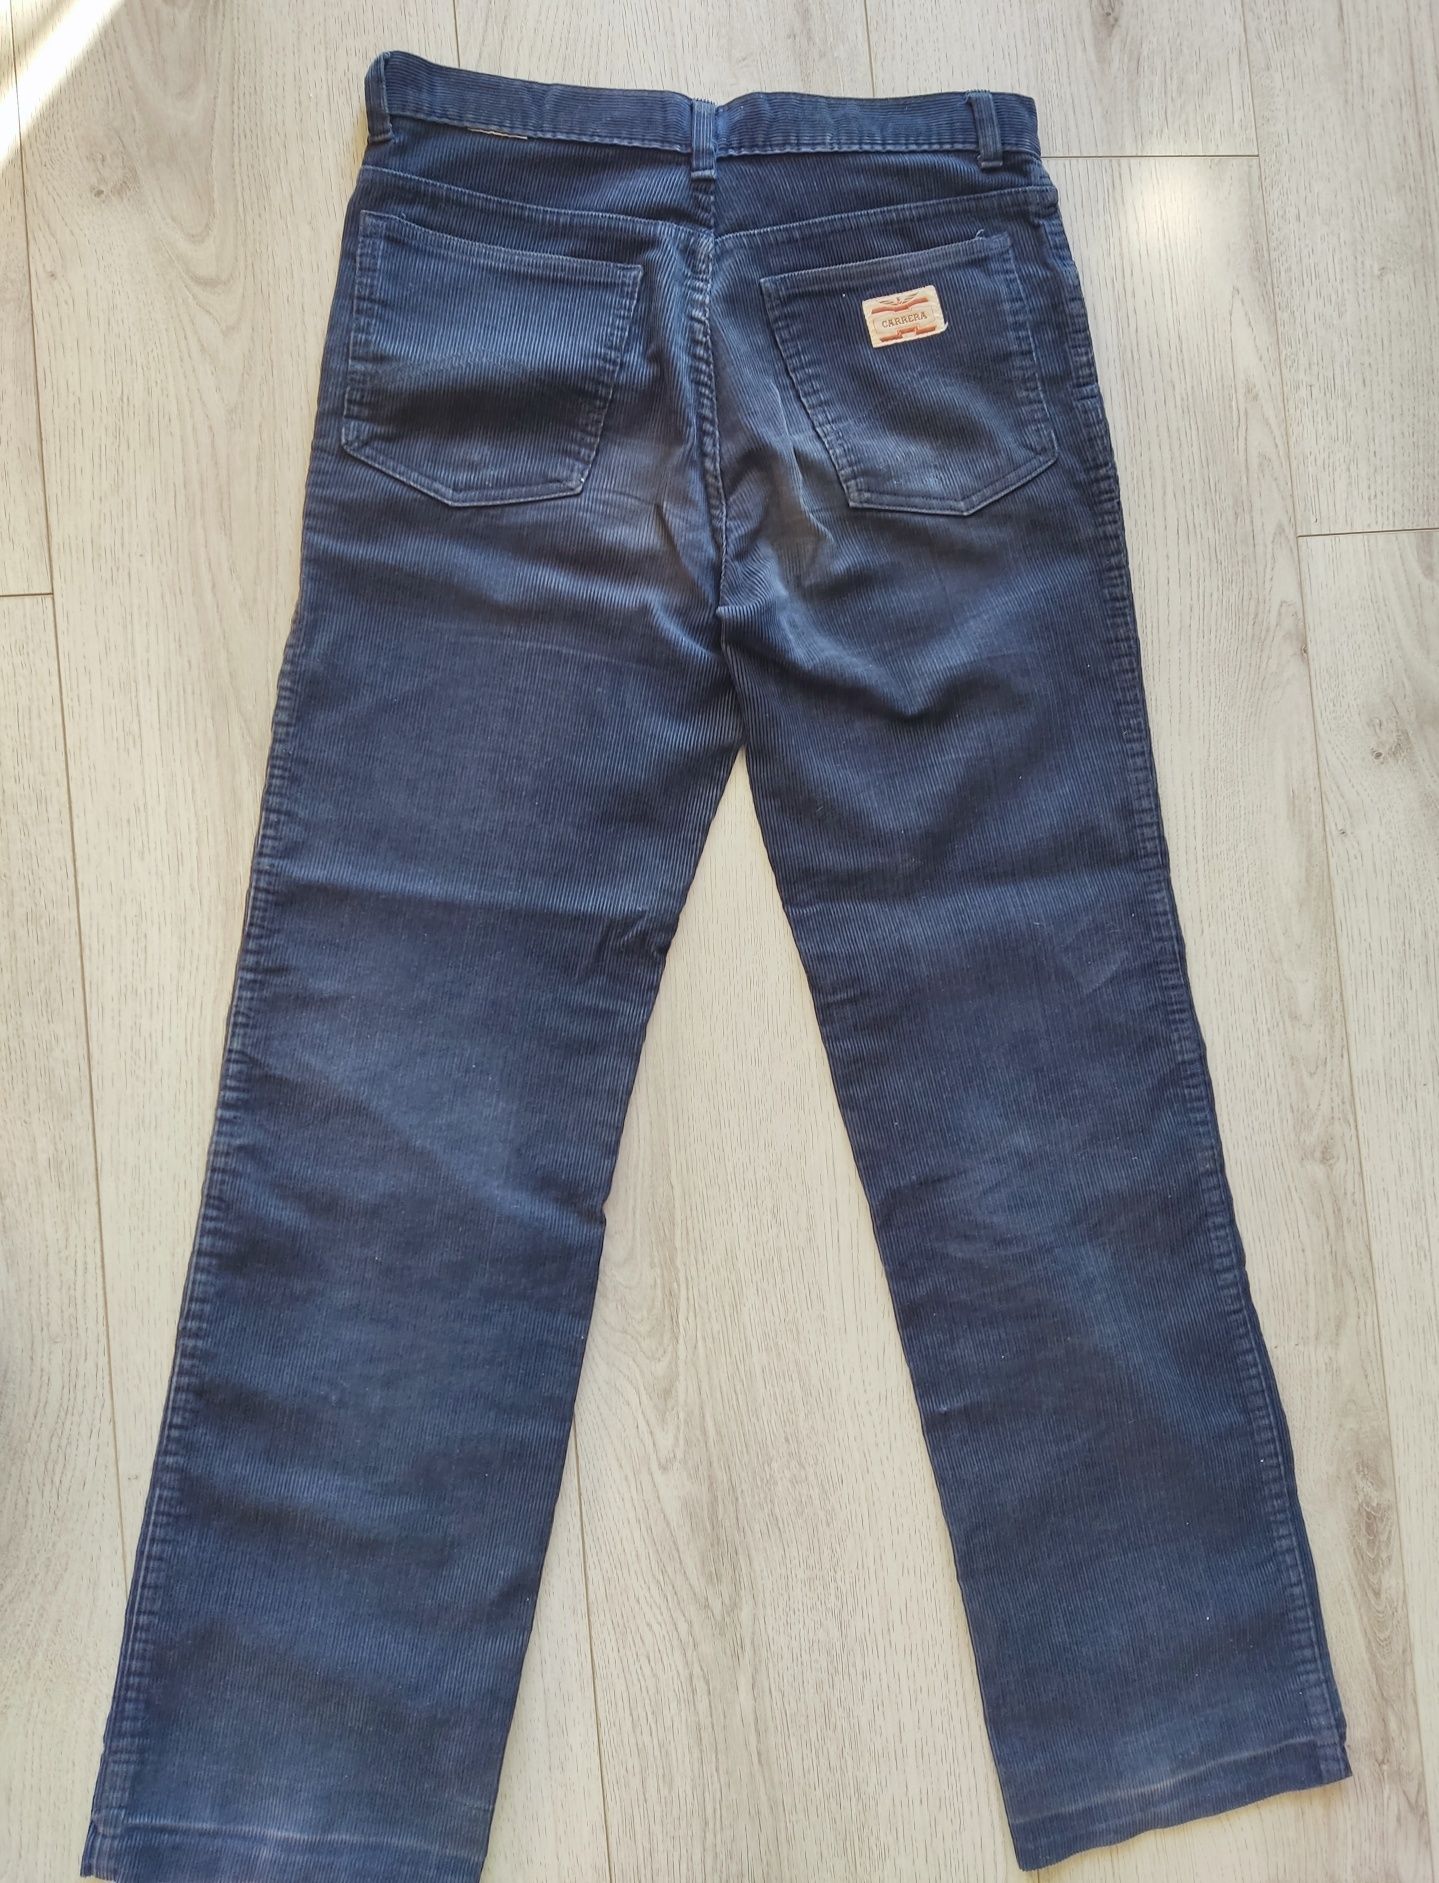 Мъжки джинси р-р 34 - нови, Carrera оригинал